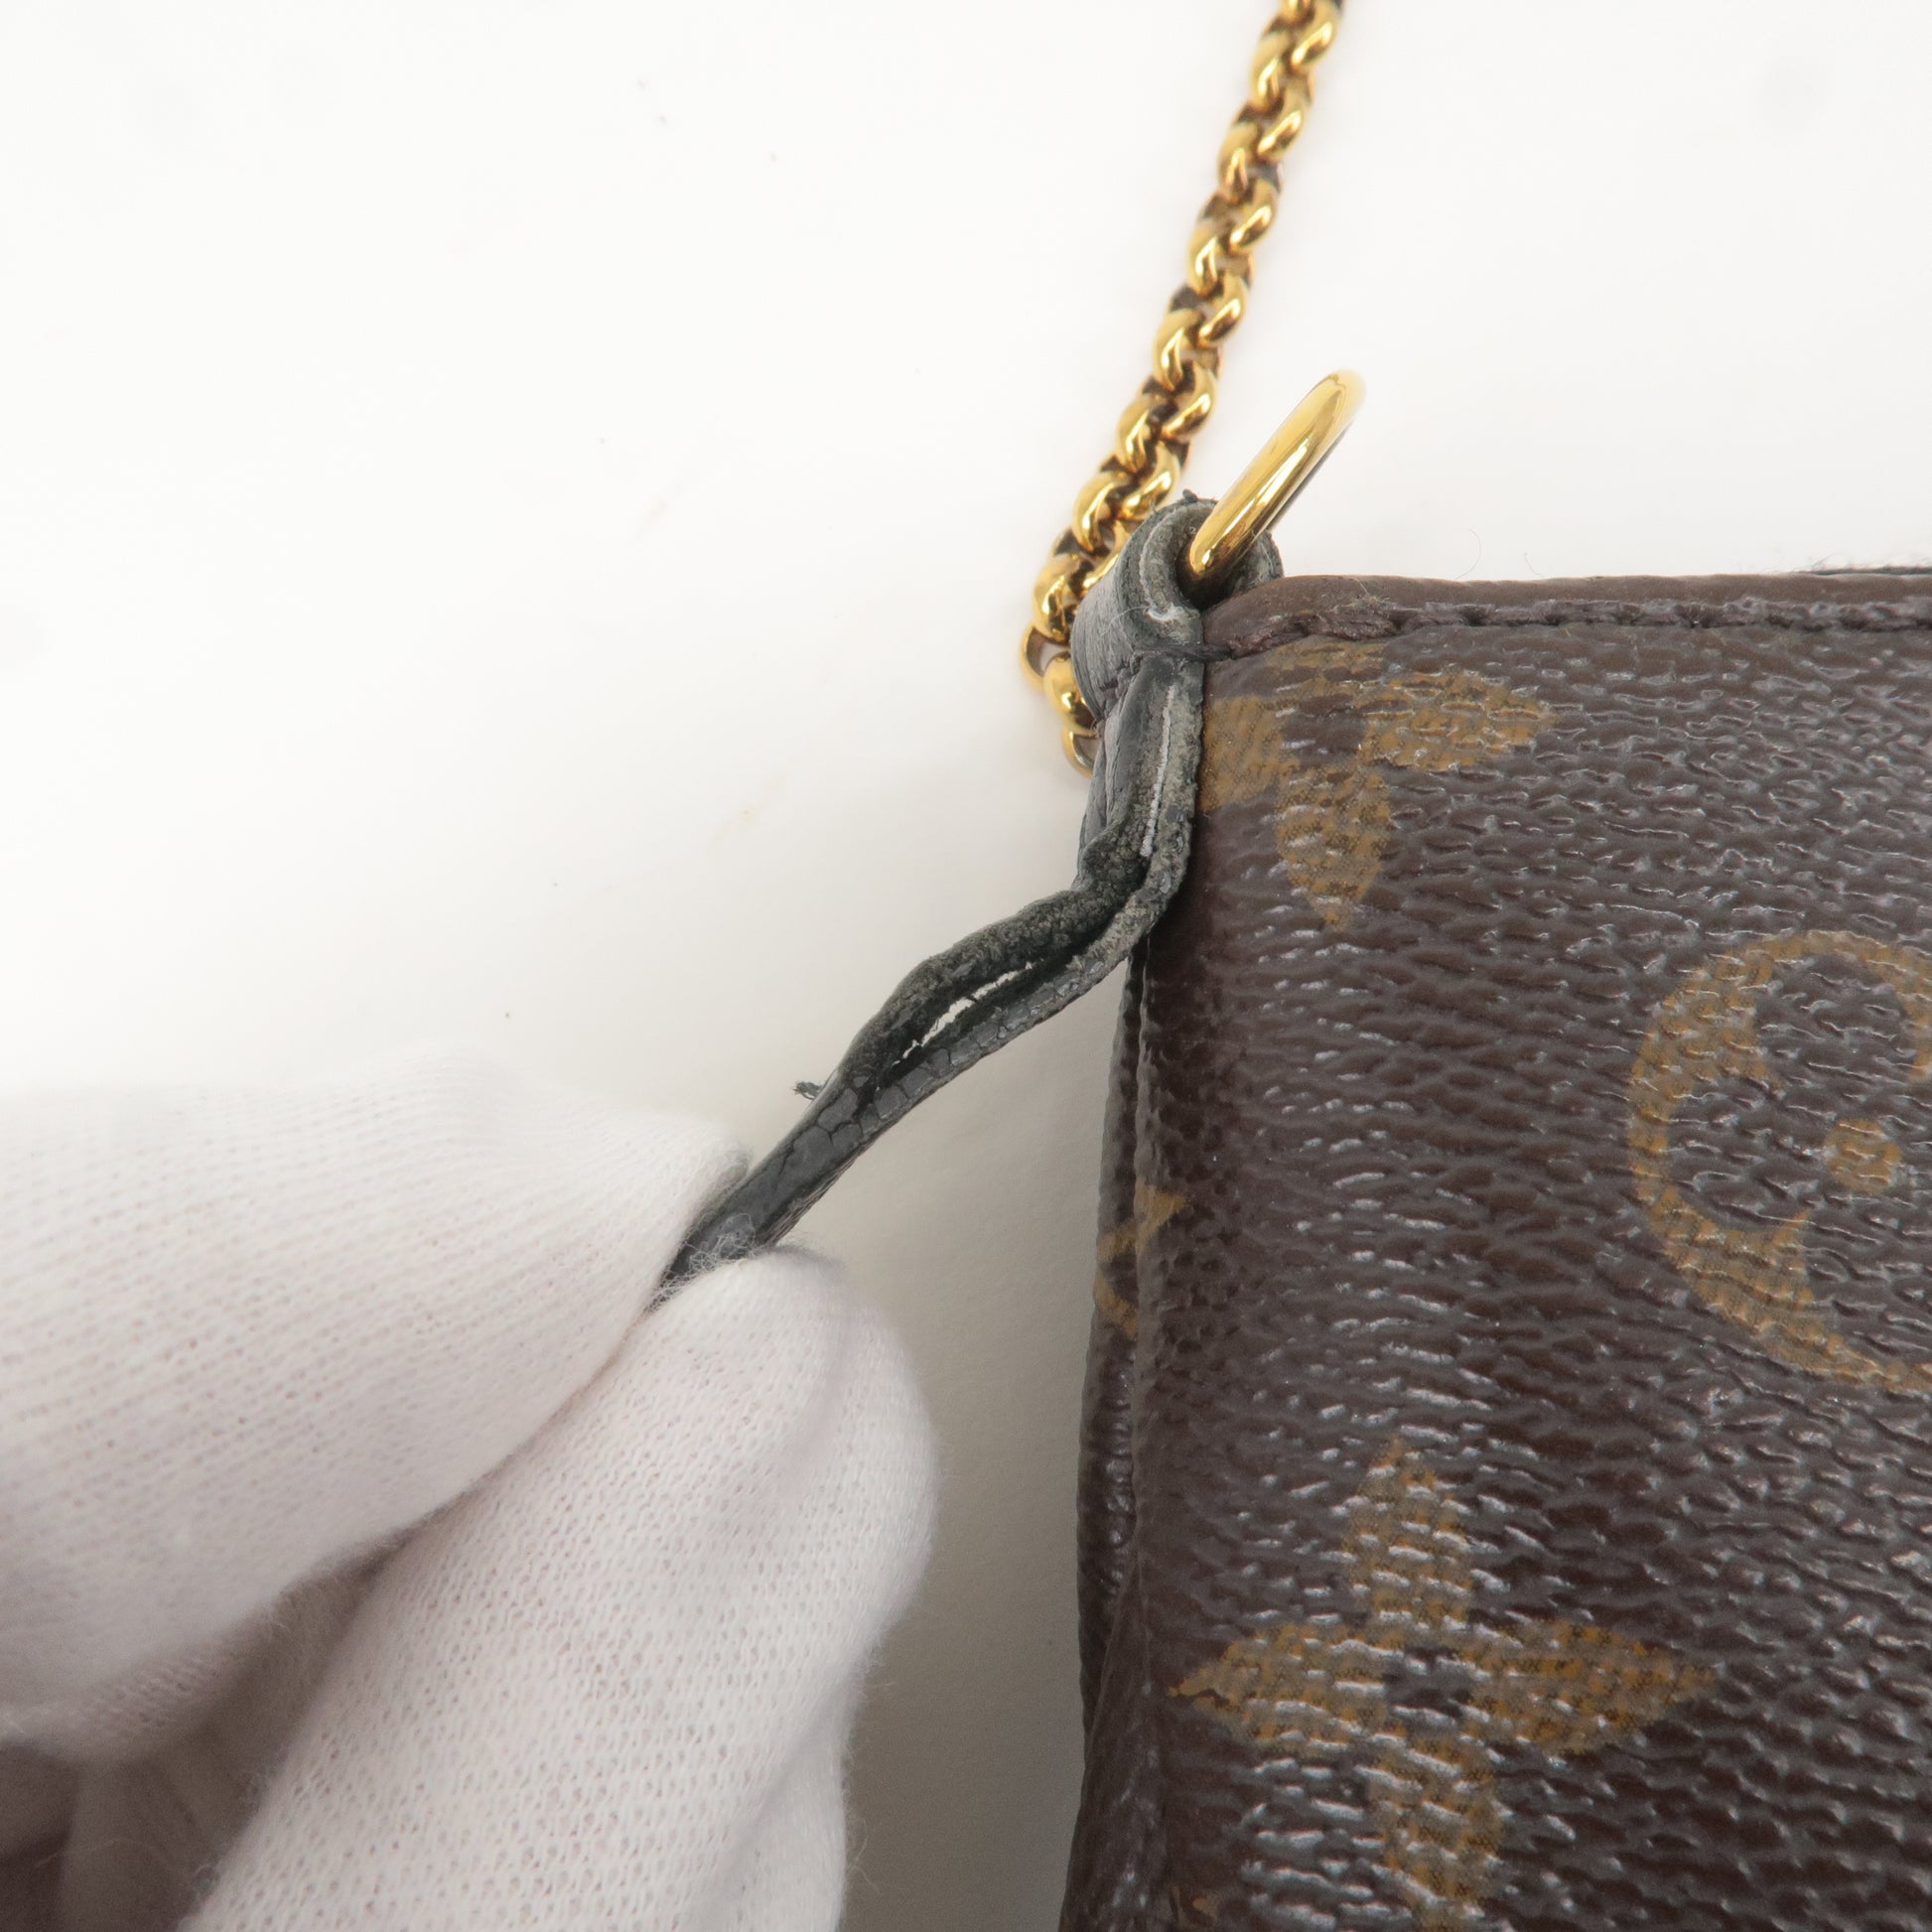 Louis Vuitton Pallas MM Monogram – Luxi Bags